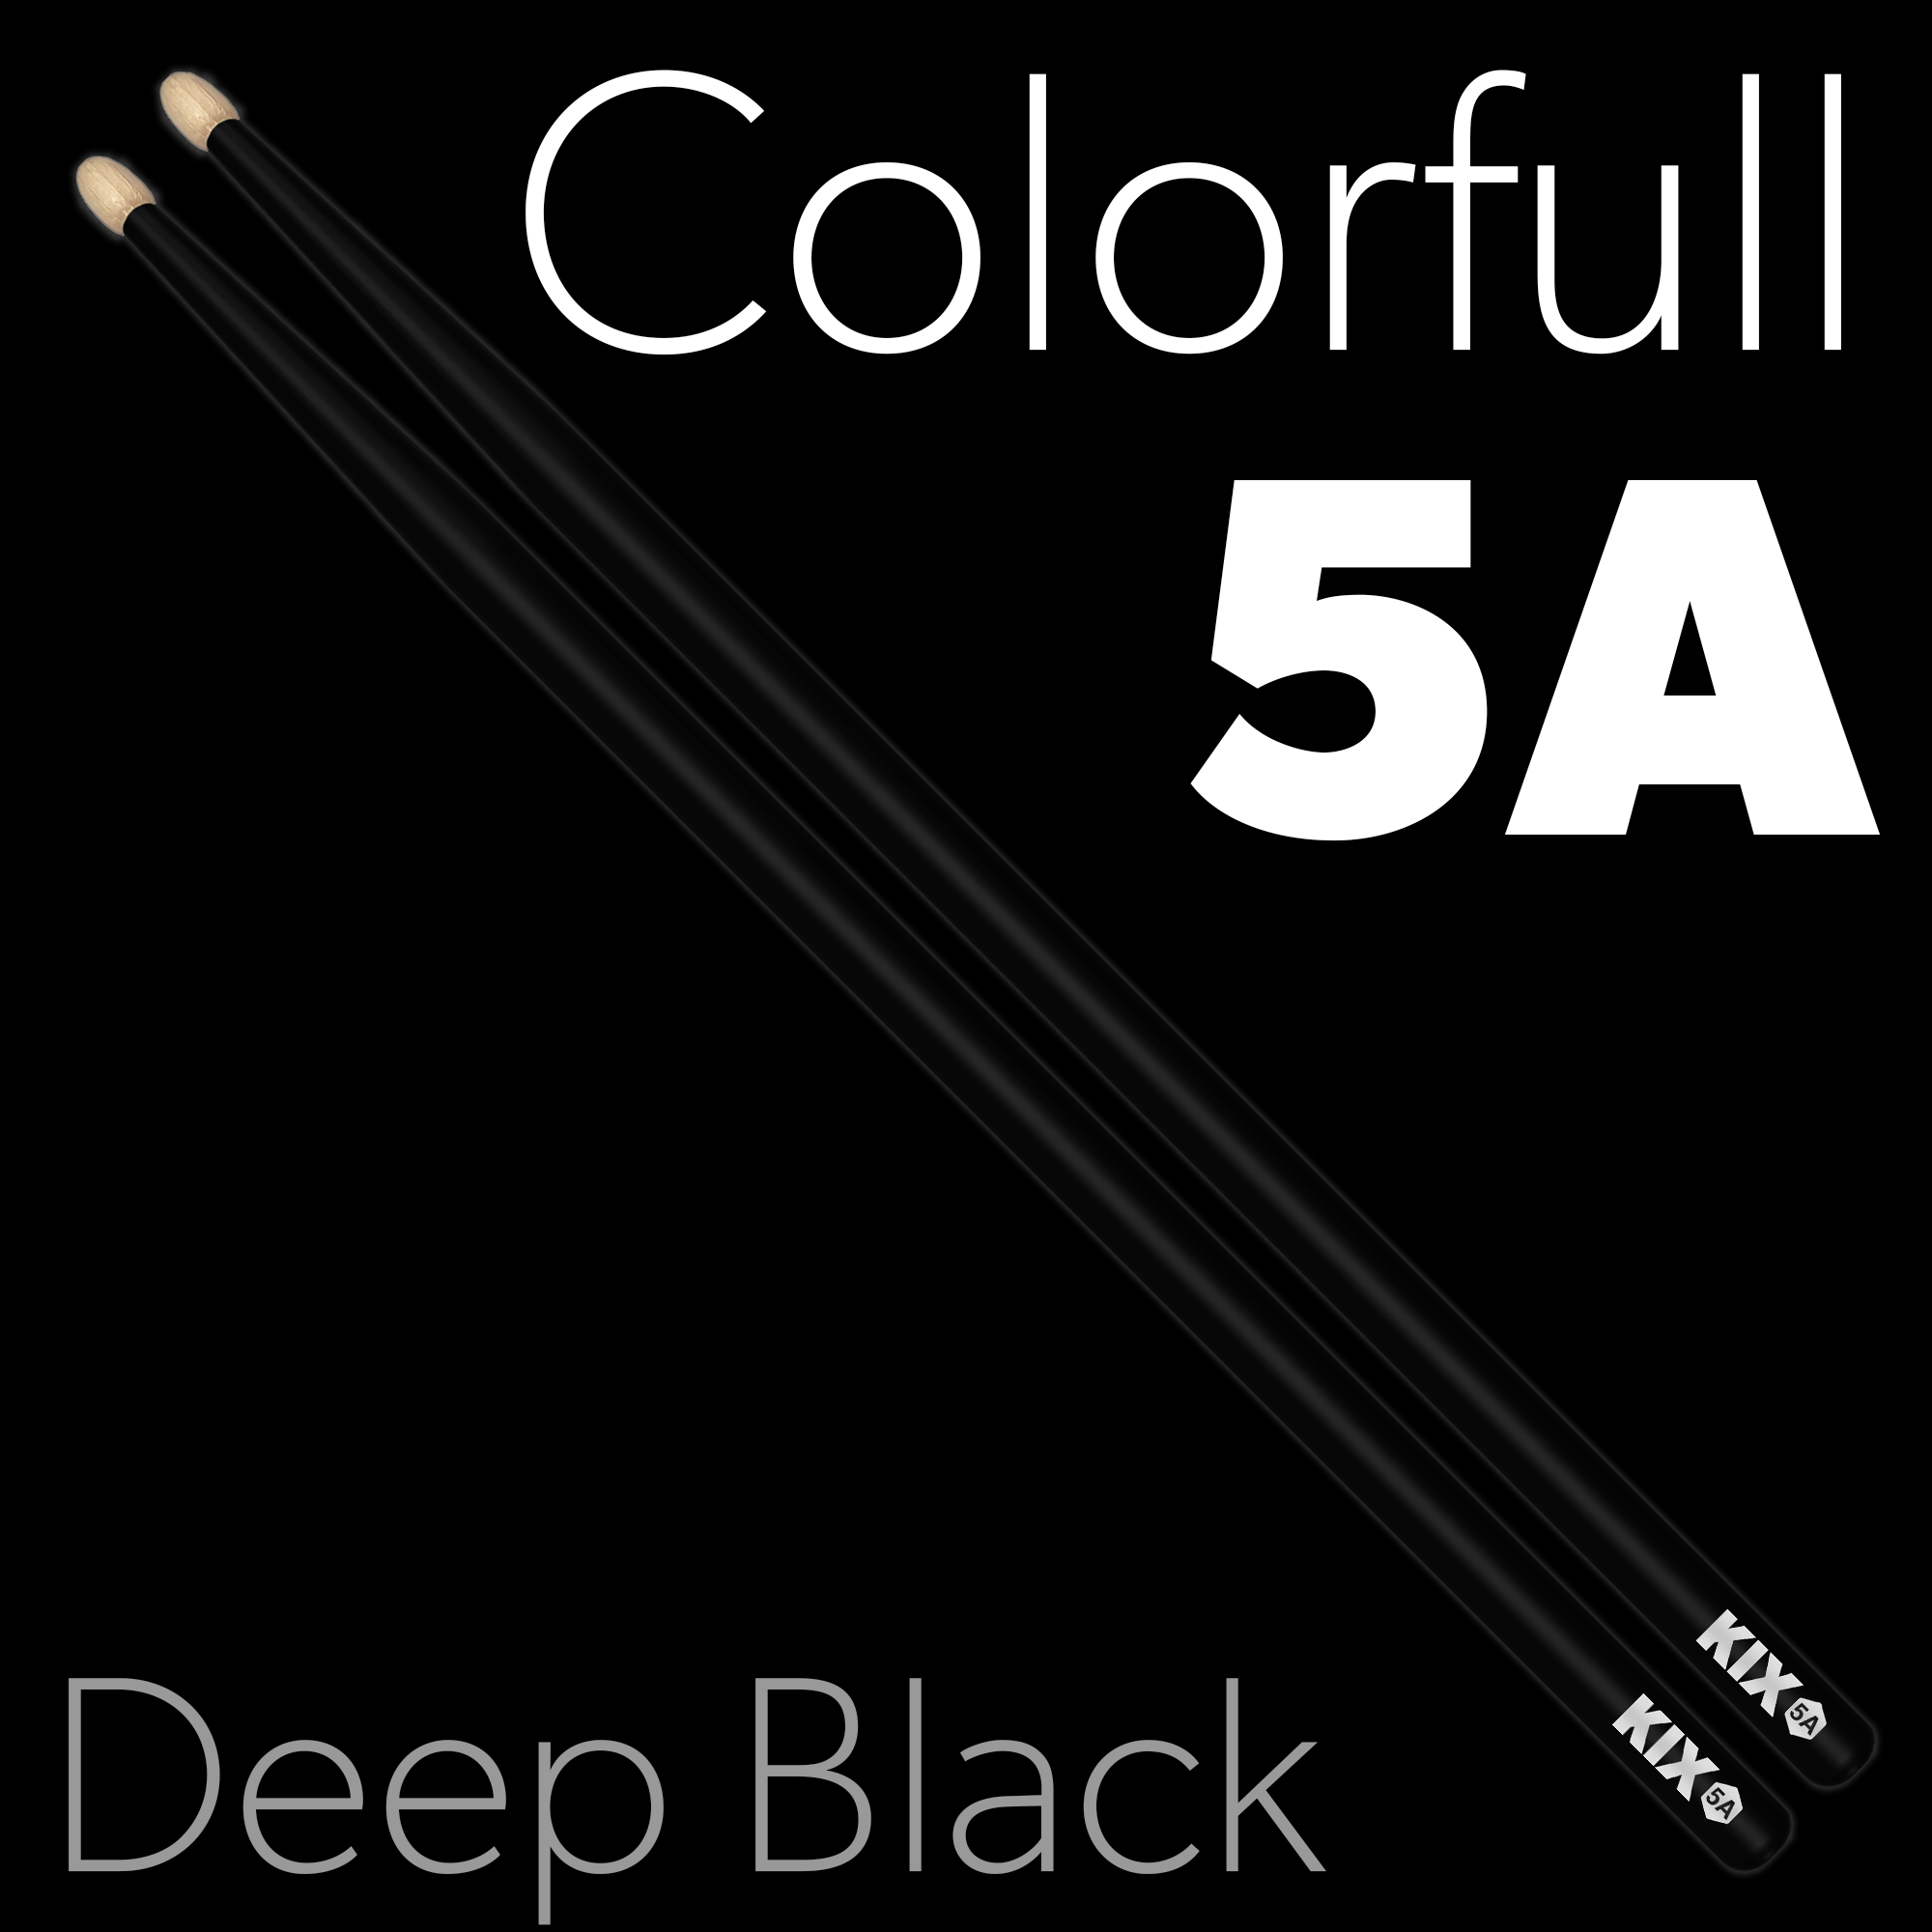 Baguettes Colorfull 5A – Deep Black KIX